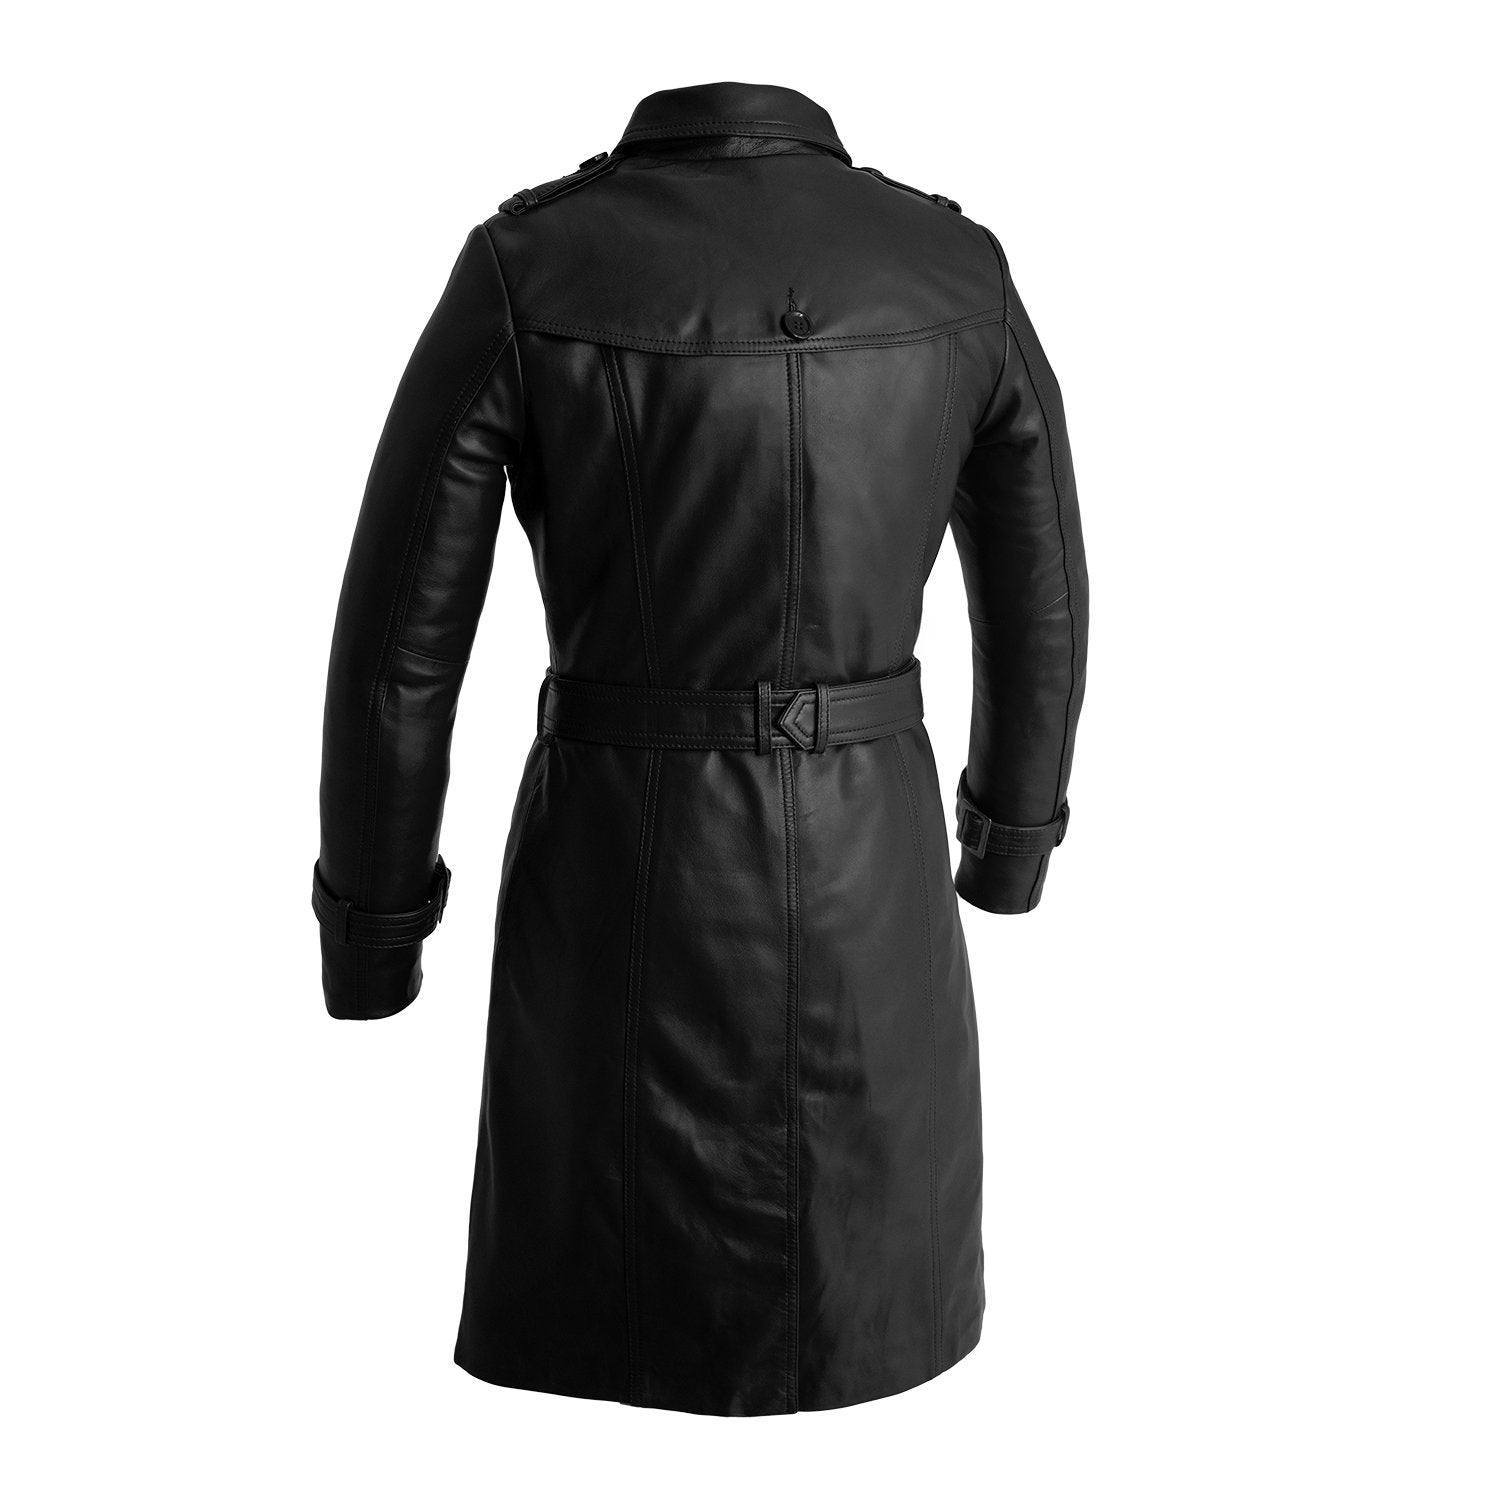 Olivia - Women's Leather Jacket Black Jacket Best Leather Ny   